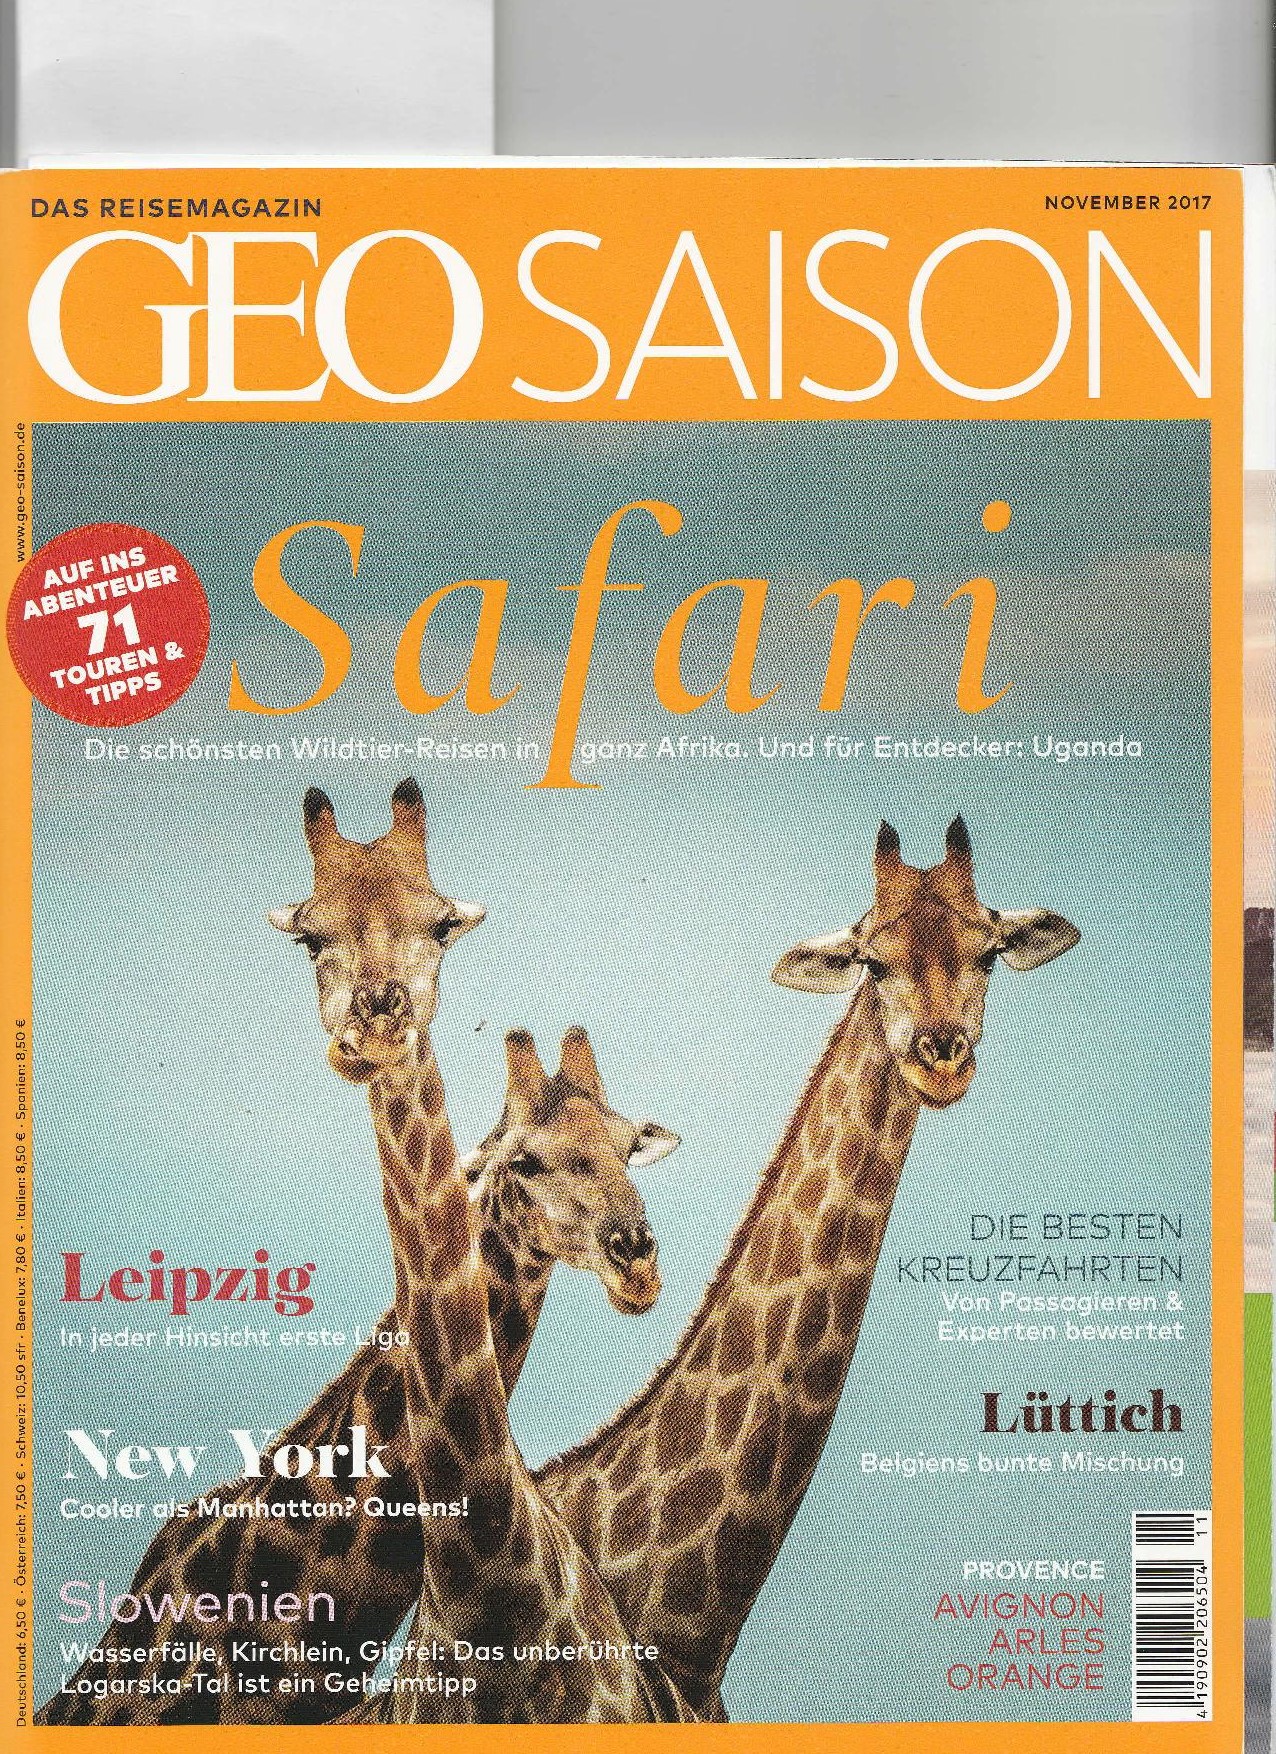 SafariScout.com wird auf den Seiten 55 und 59 empfohlen